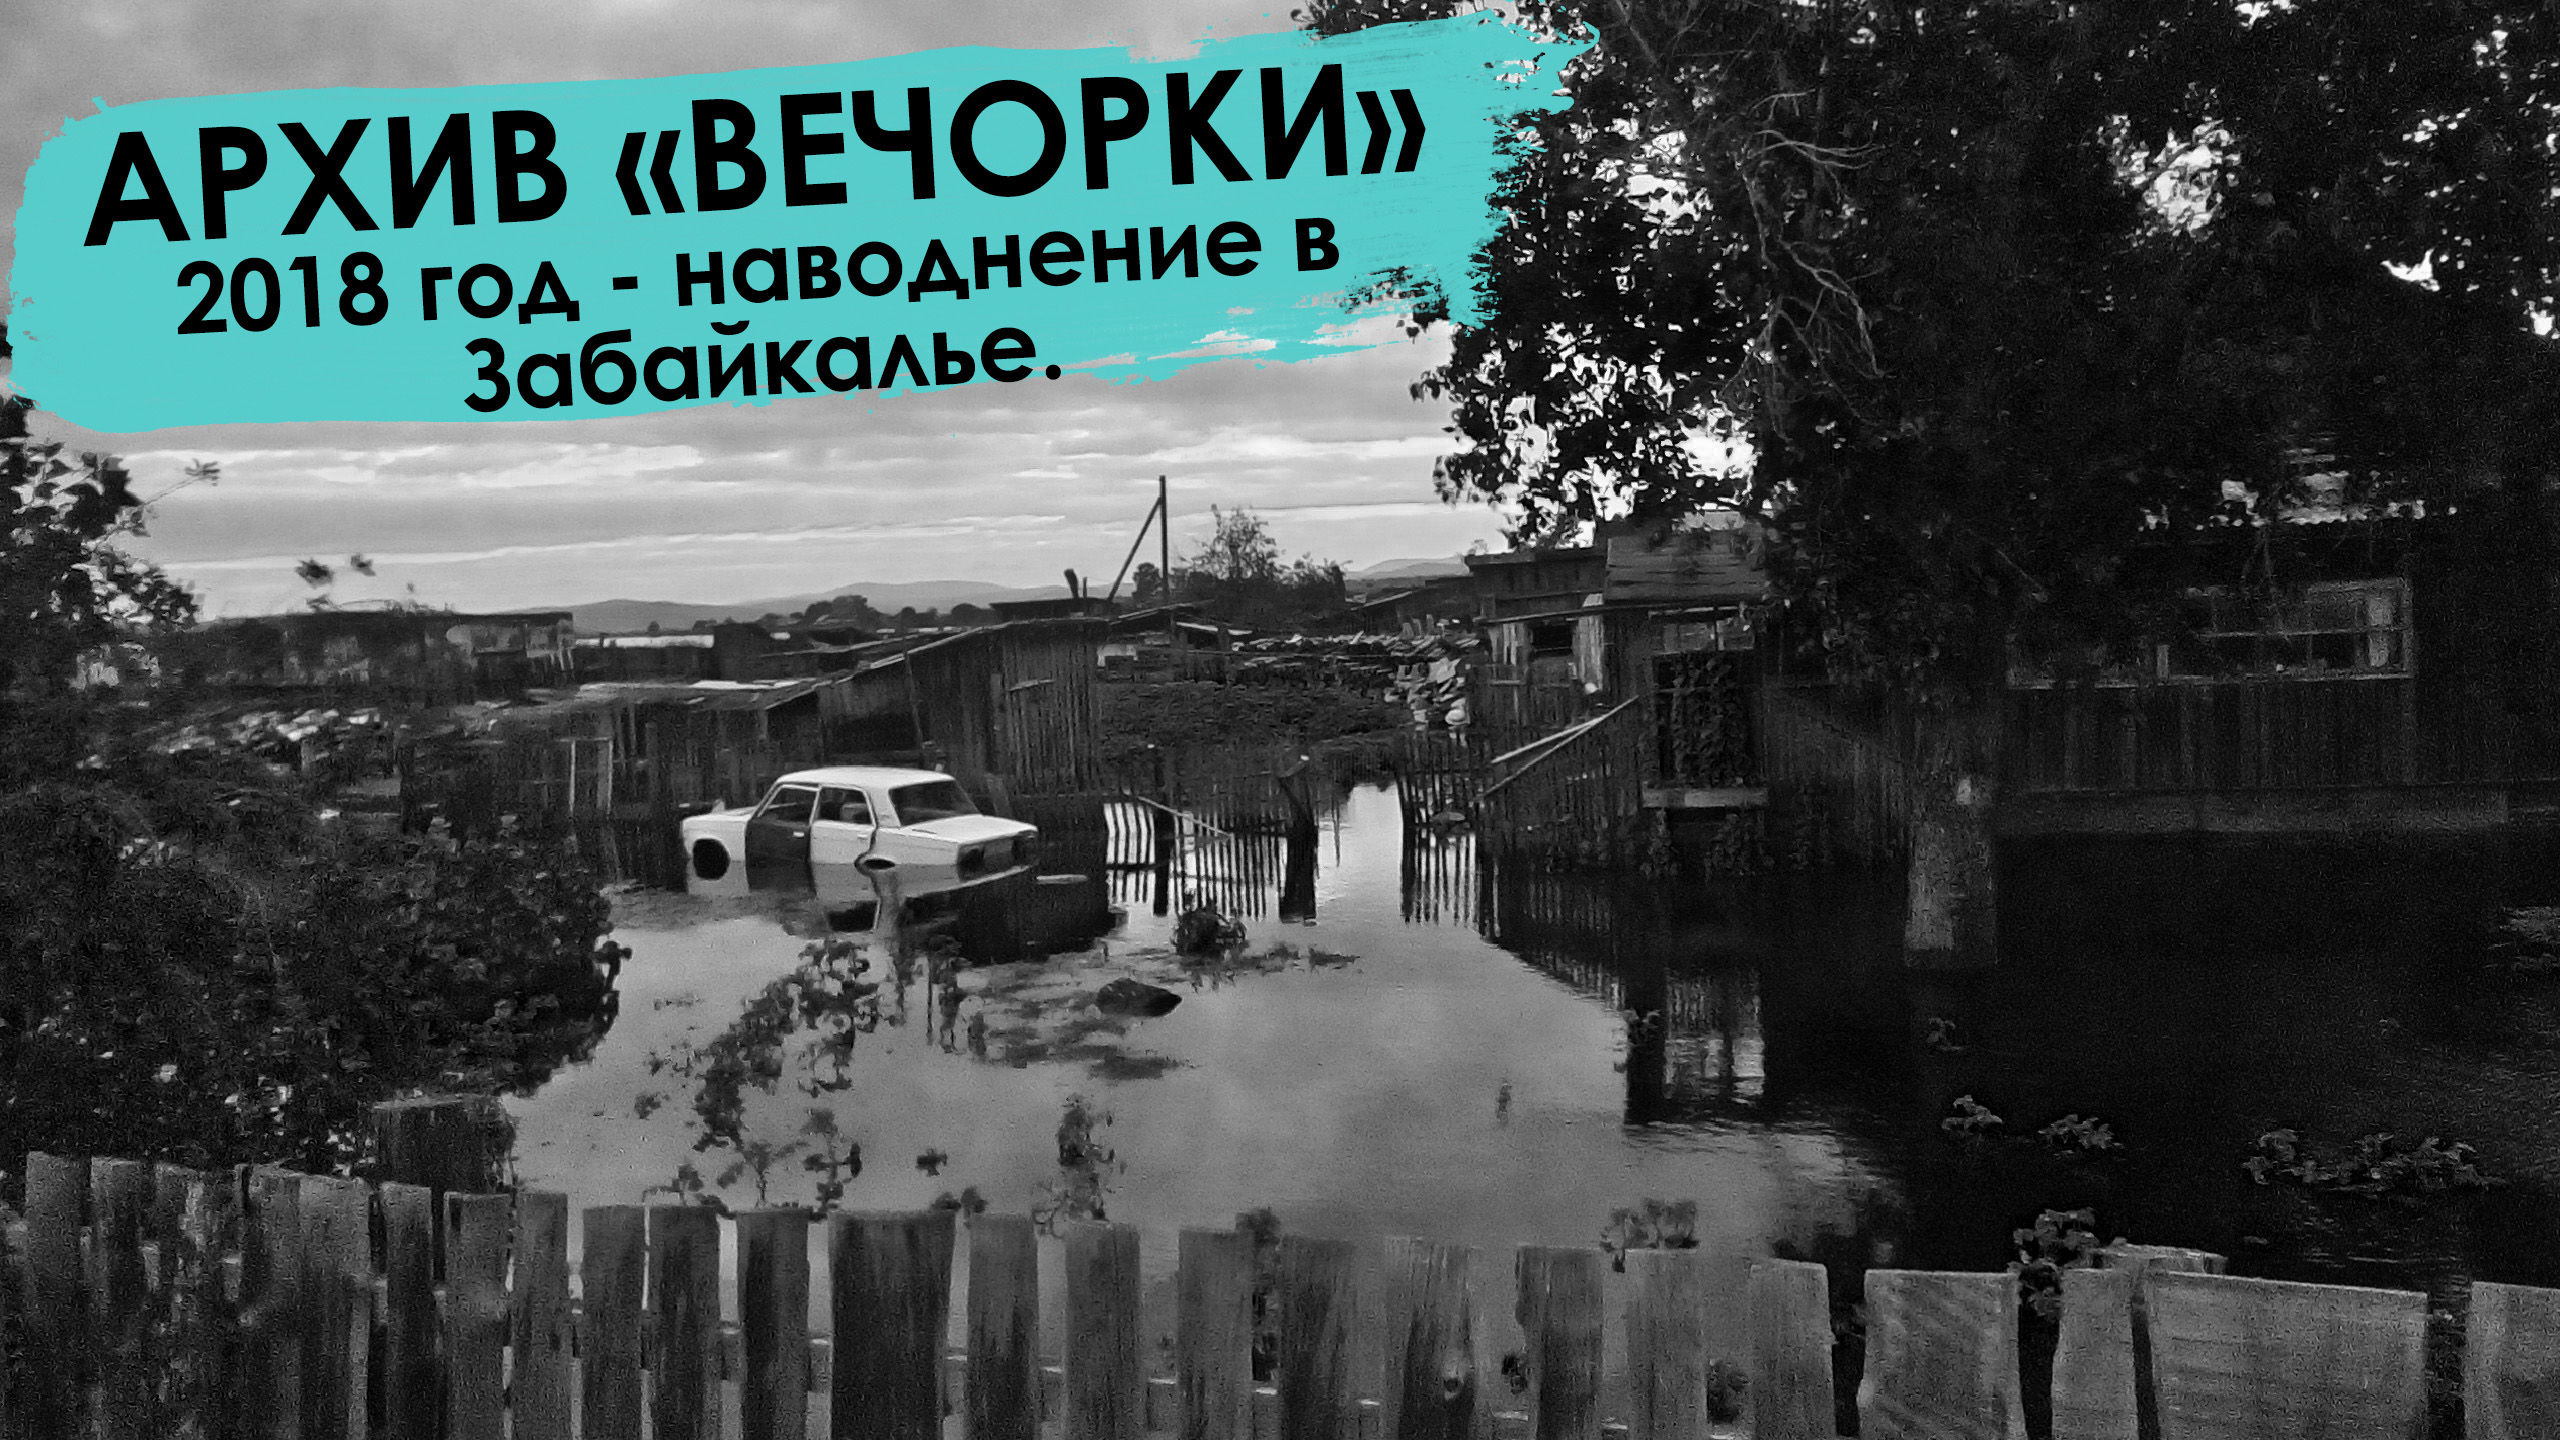 Вечорка ТВ: Вспомнить все - наводнение - 2018 в Забайкалье. (Архивы Вечорки)